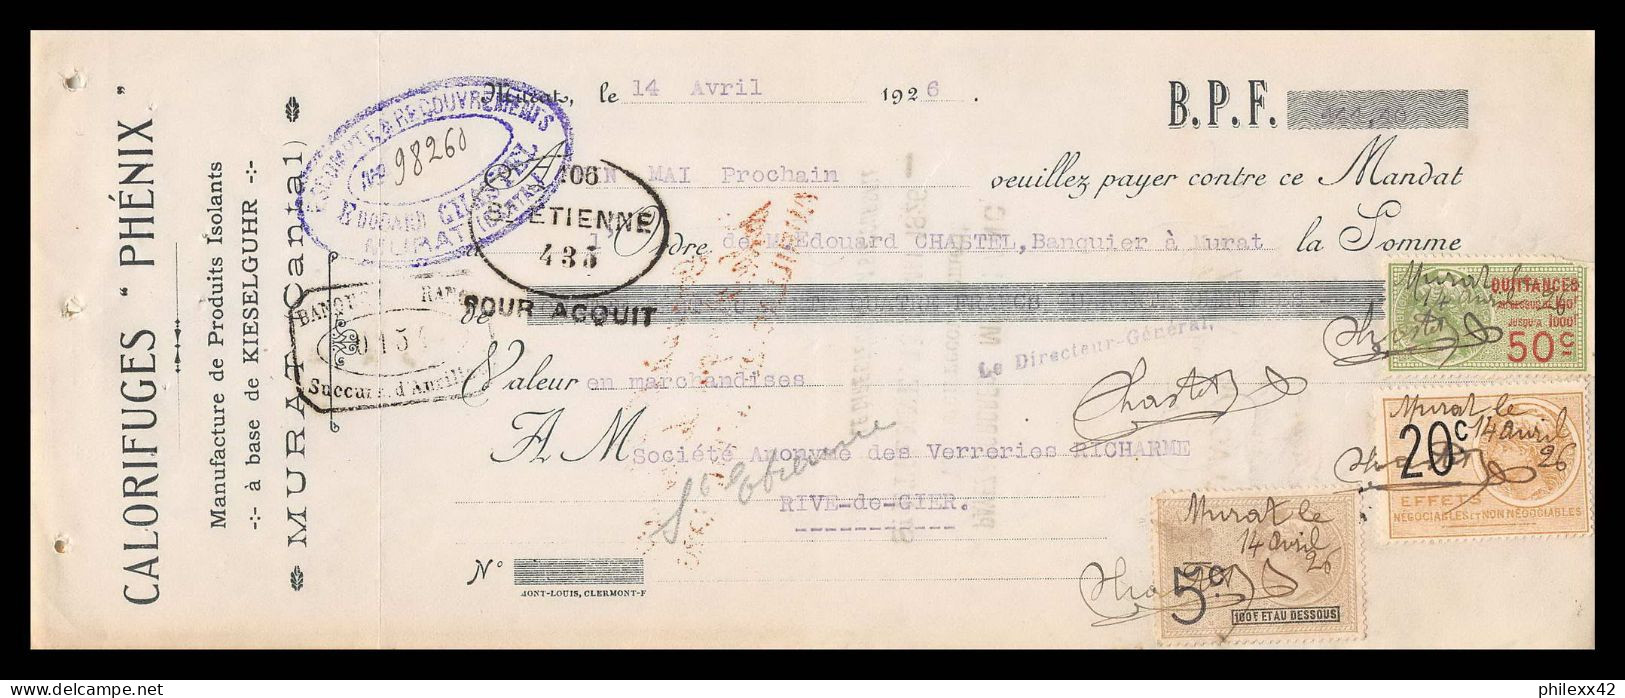 12979 Calorifuges Phénix Murat Cantal Verreries Richarme Rive De Gier Loire 1926 Timbre Fiscal Fiscaux France - Storia Postale